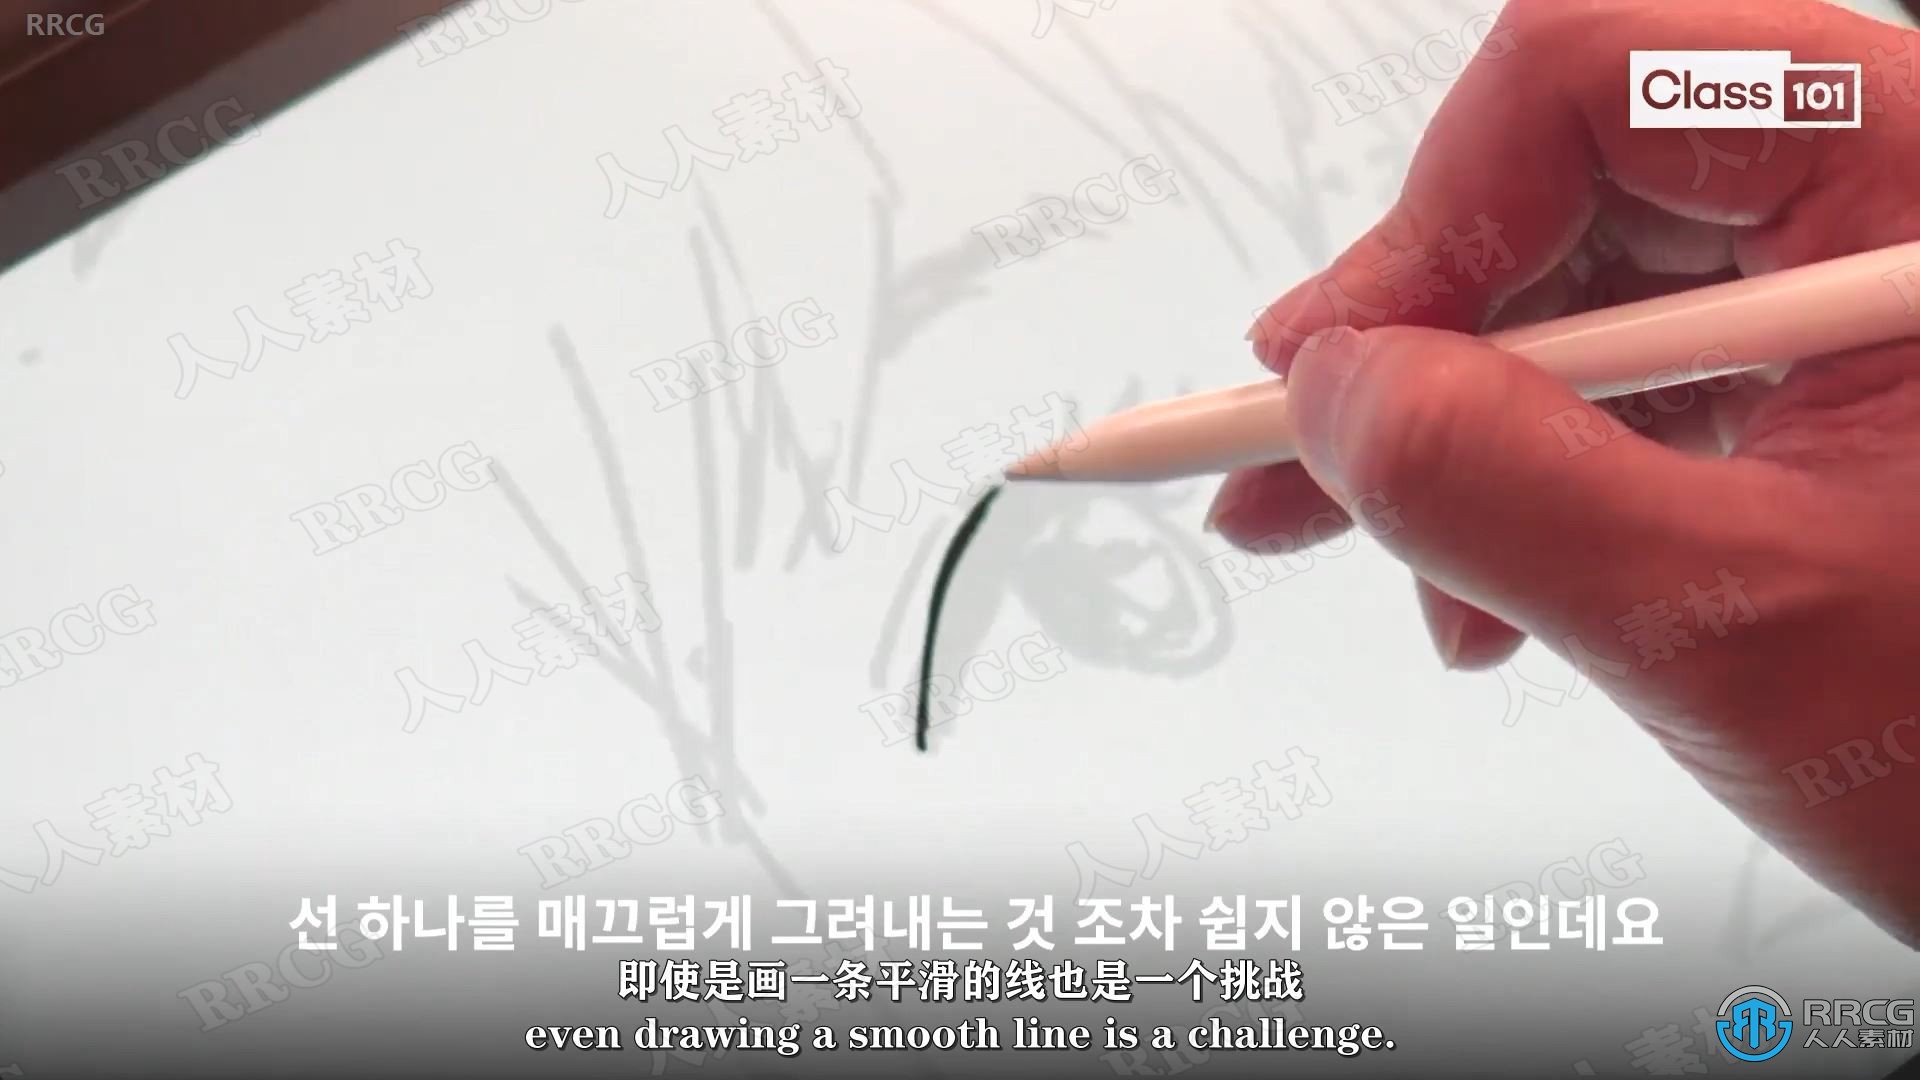 【中文字幕】学习使用iPad动画漫画数字绘画技术训练视频教程